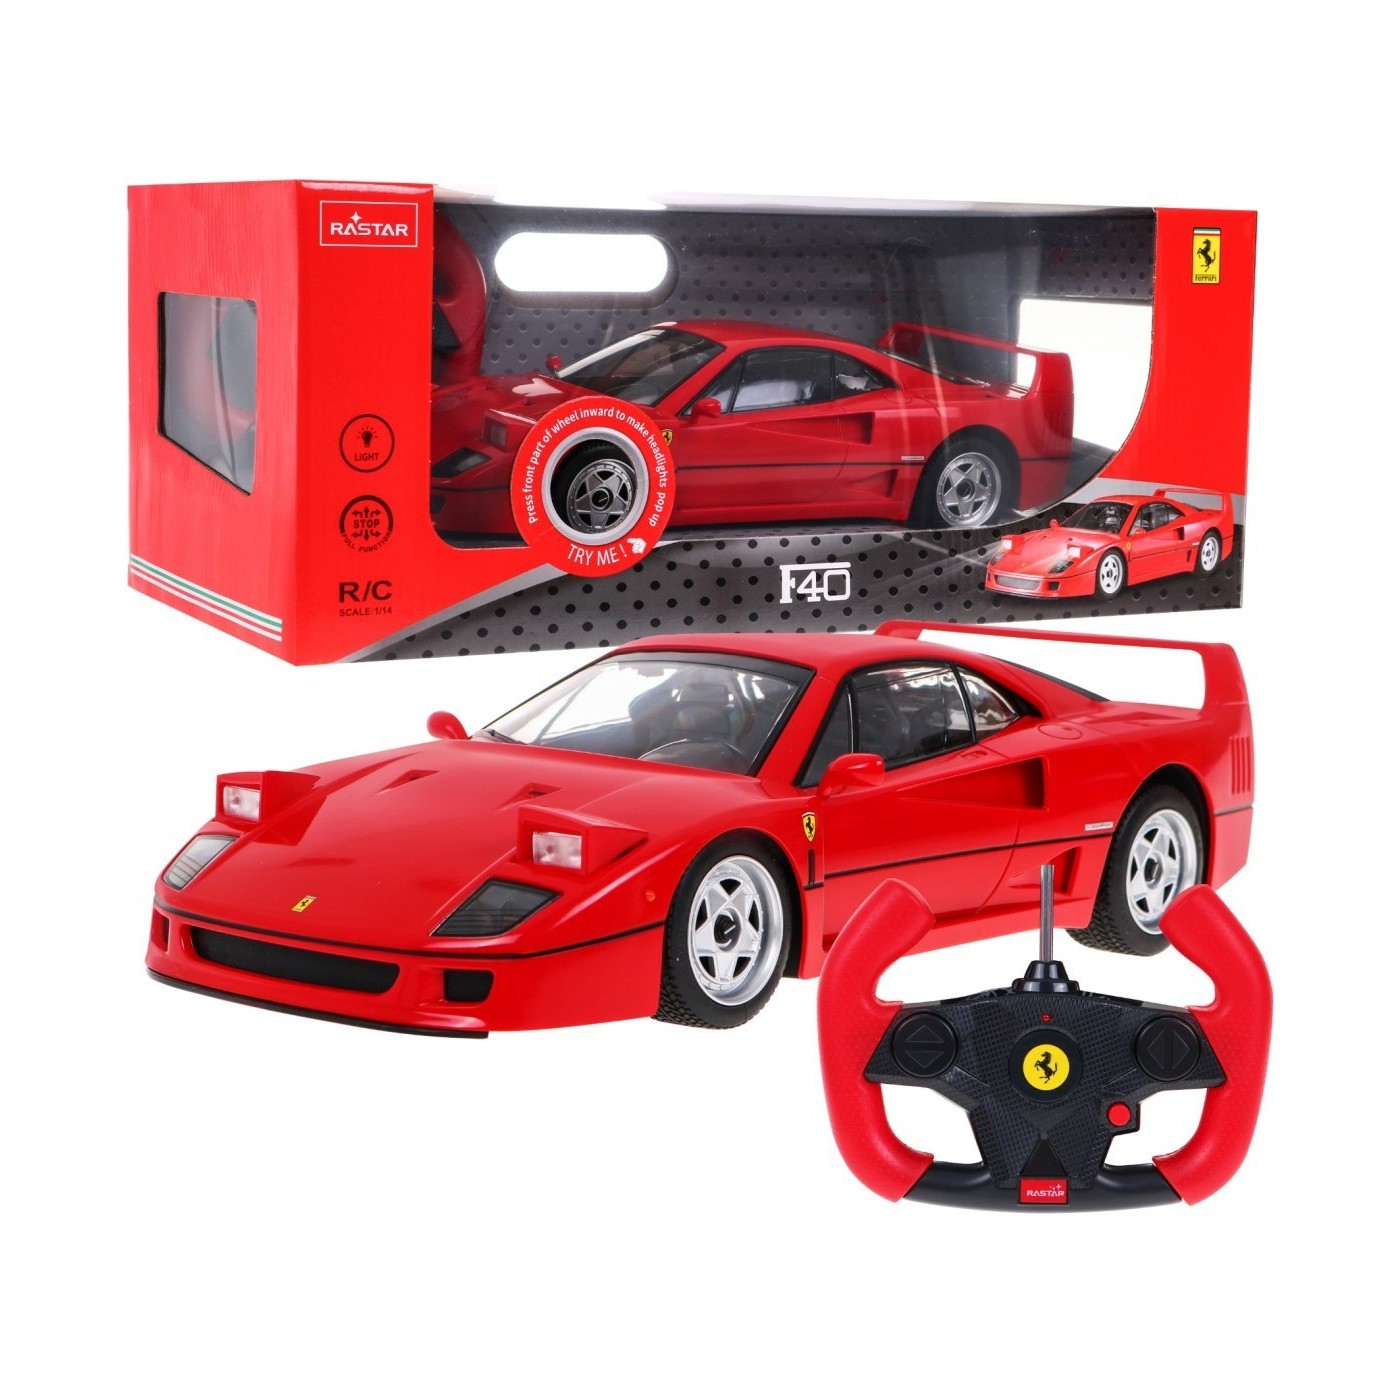 R/C toy car Ferrari F40 1:14 RASTAR